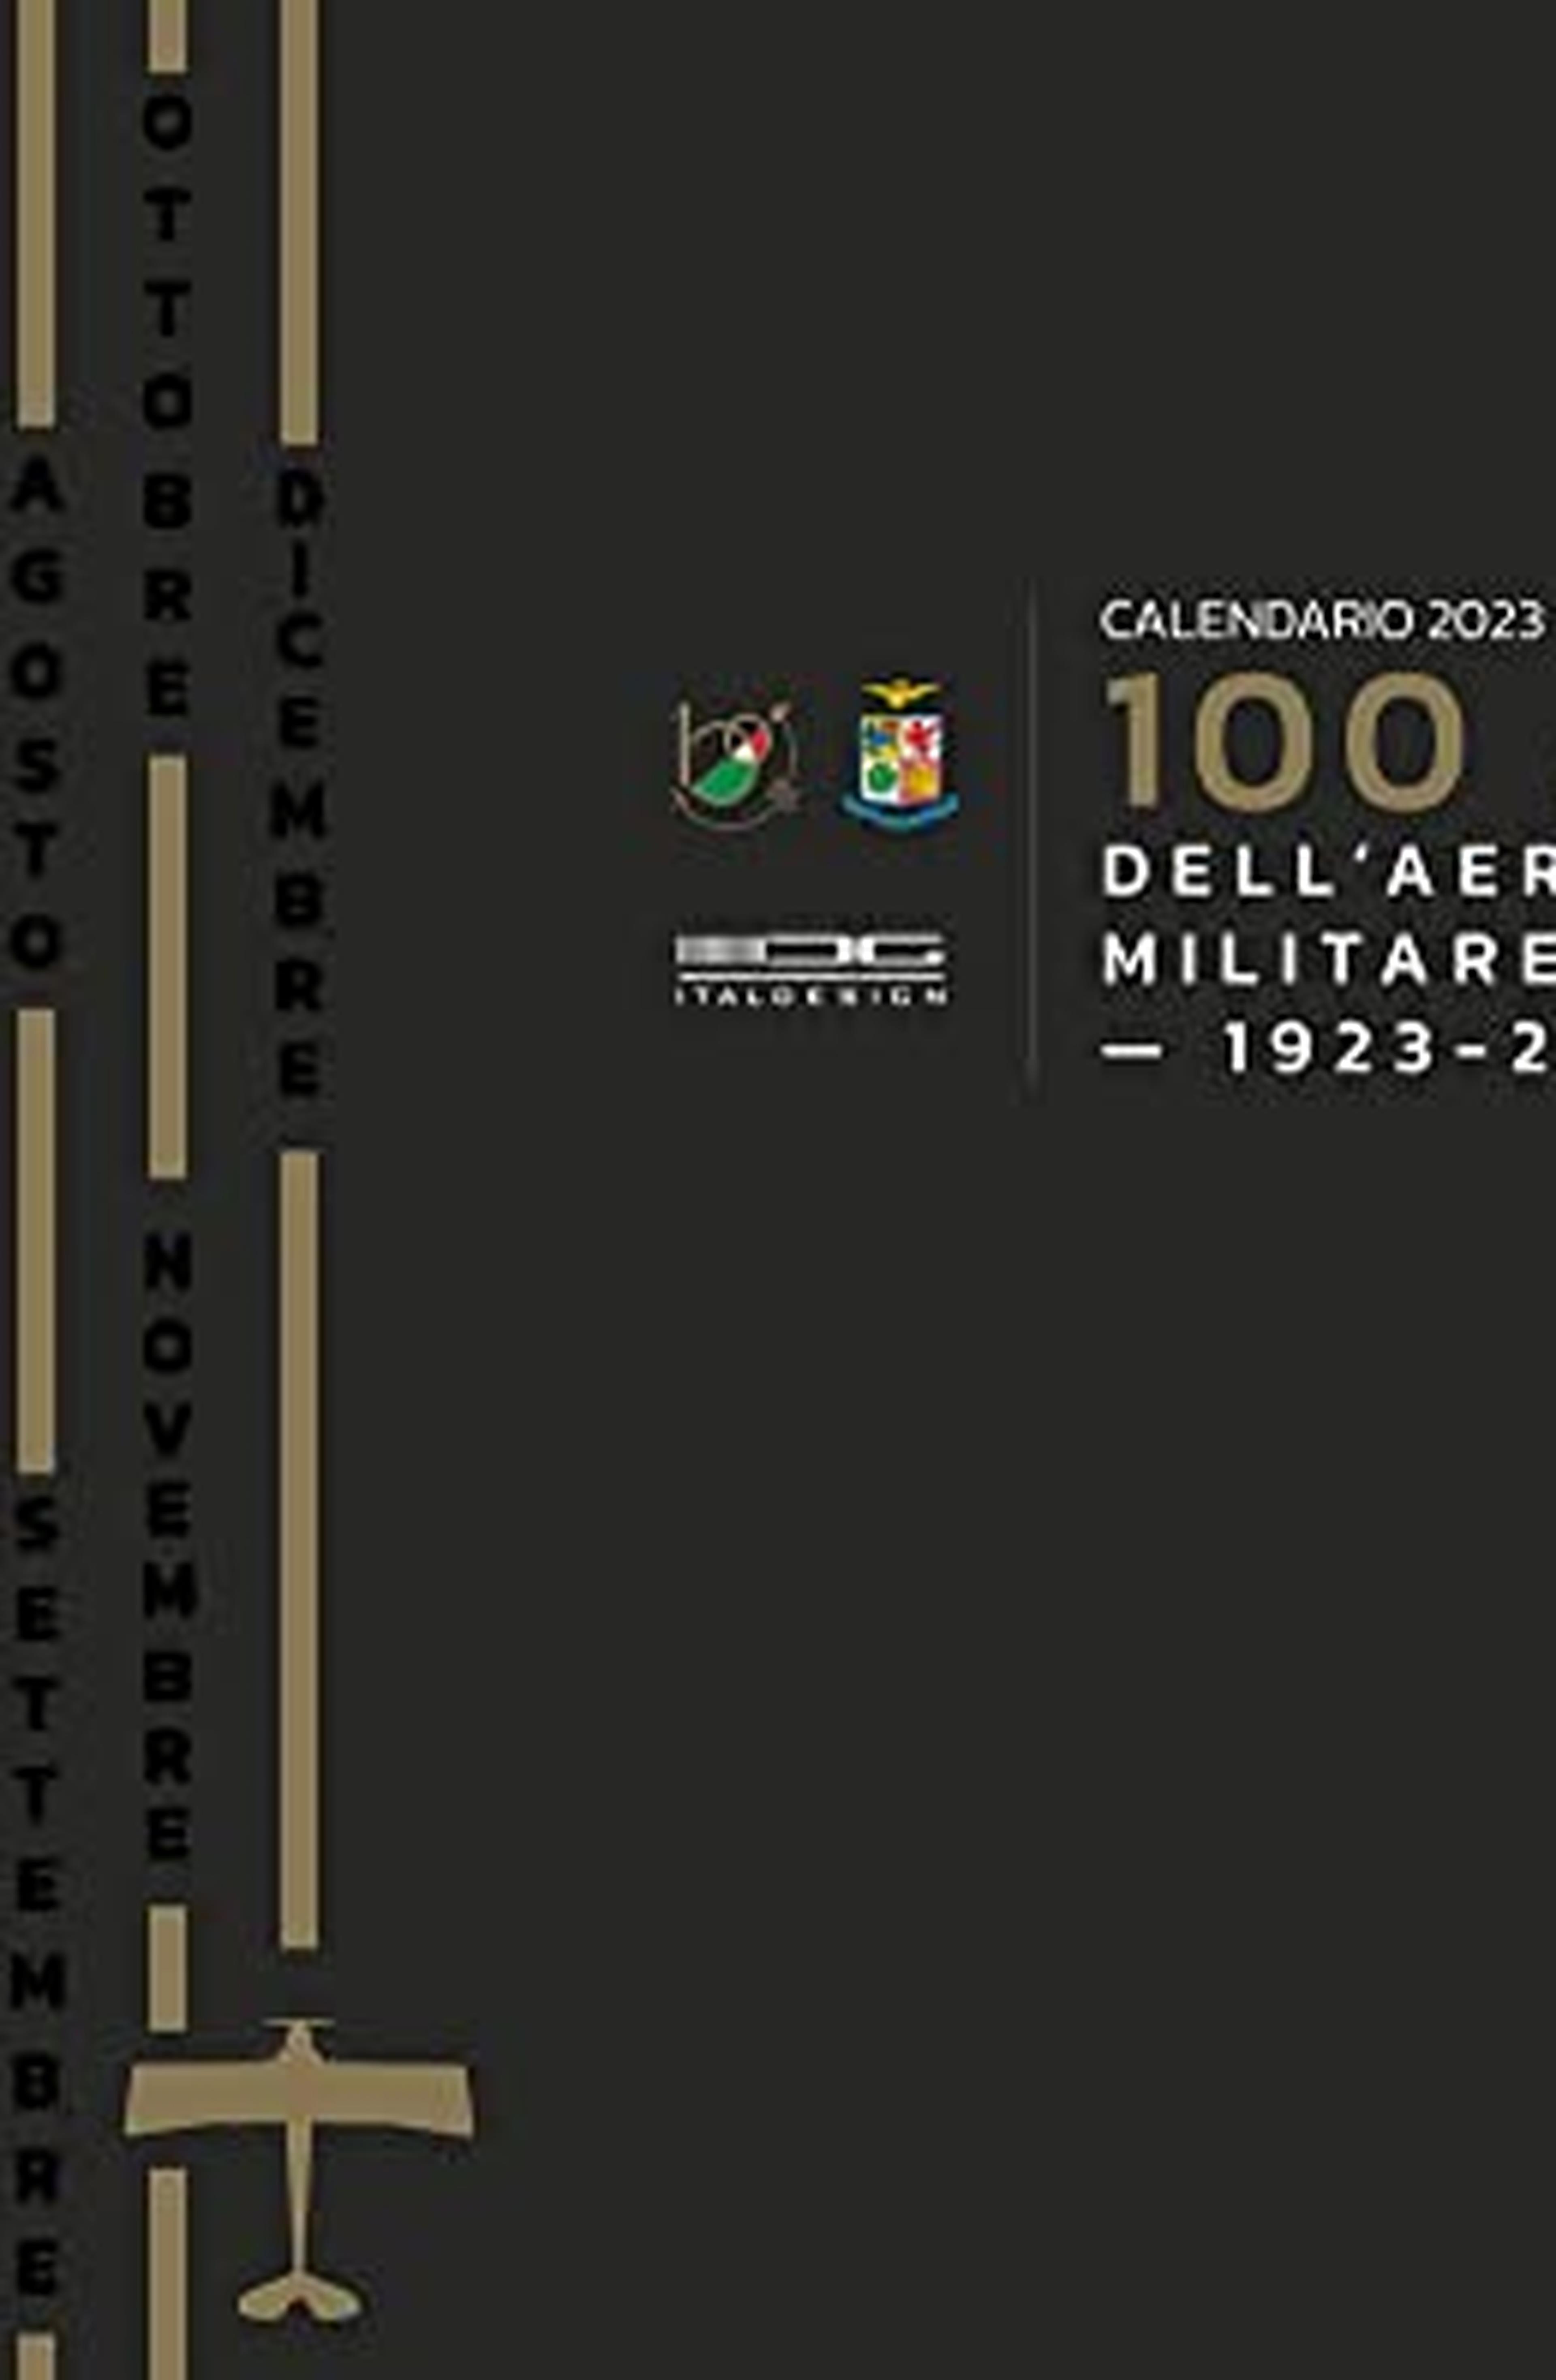 Calendario 100 anni dell'Aeronautica Militare 2023 (1923-2023)